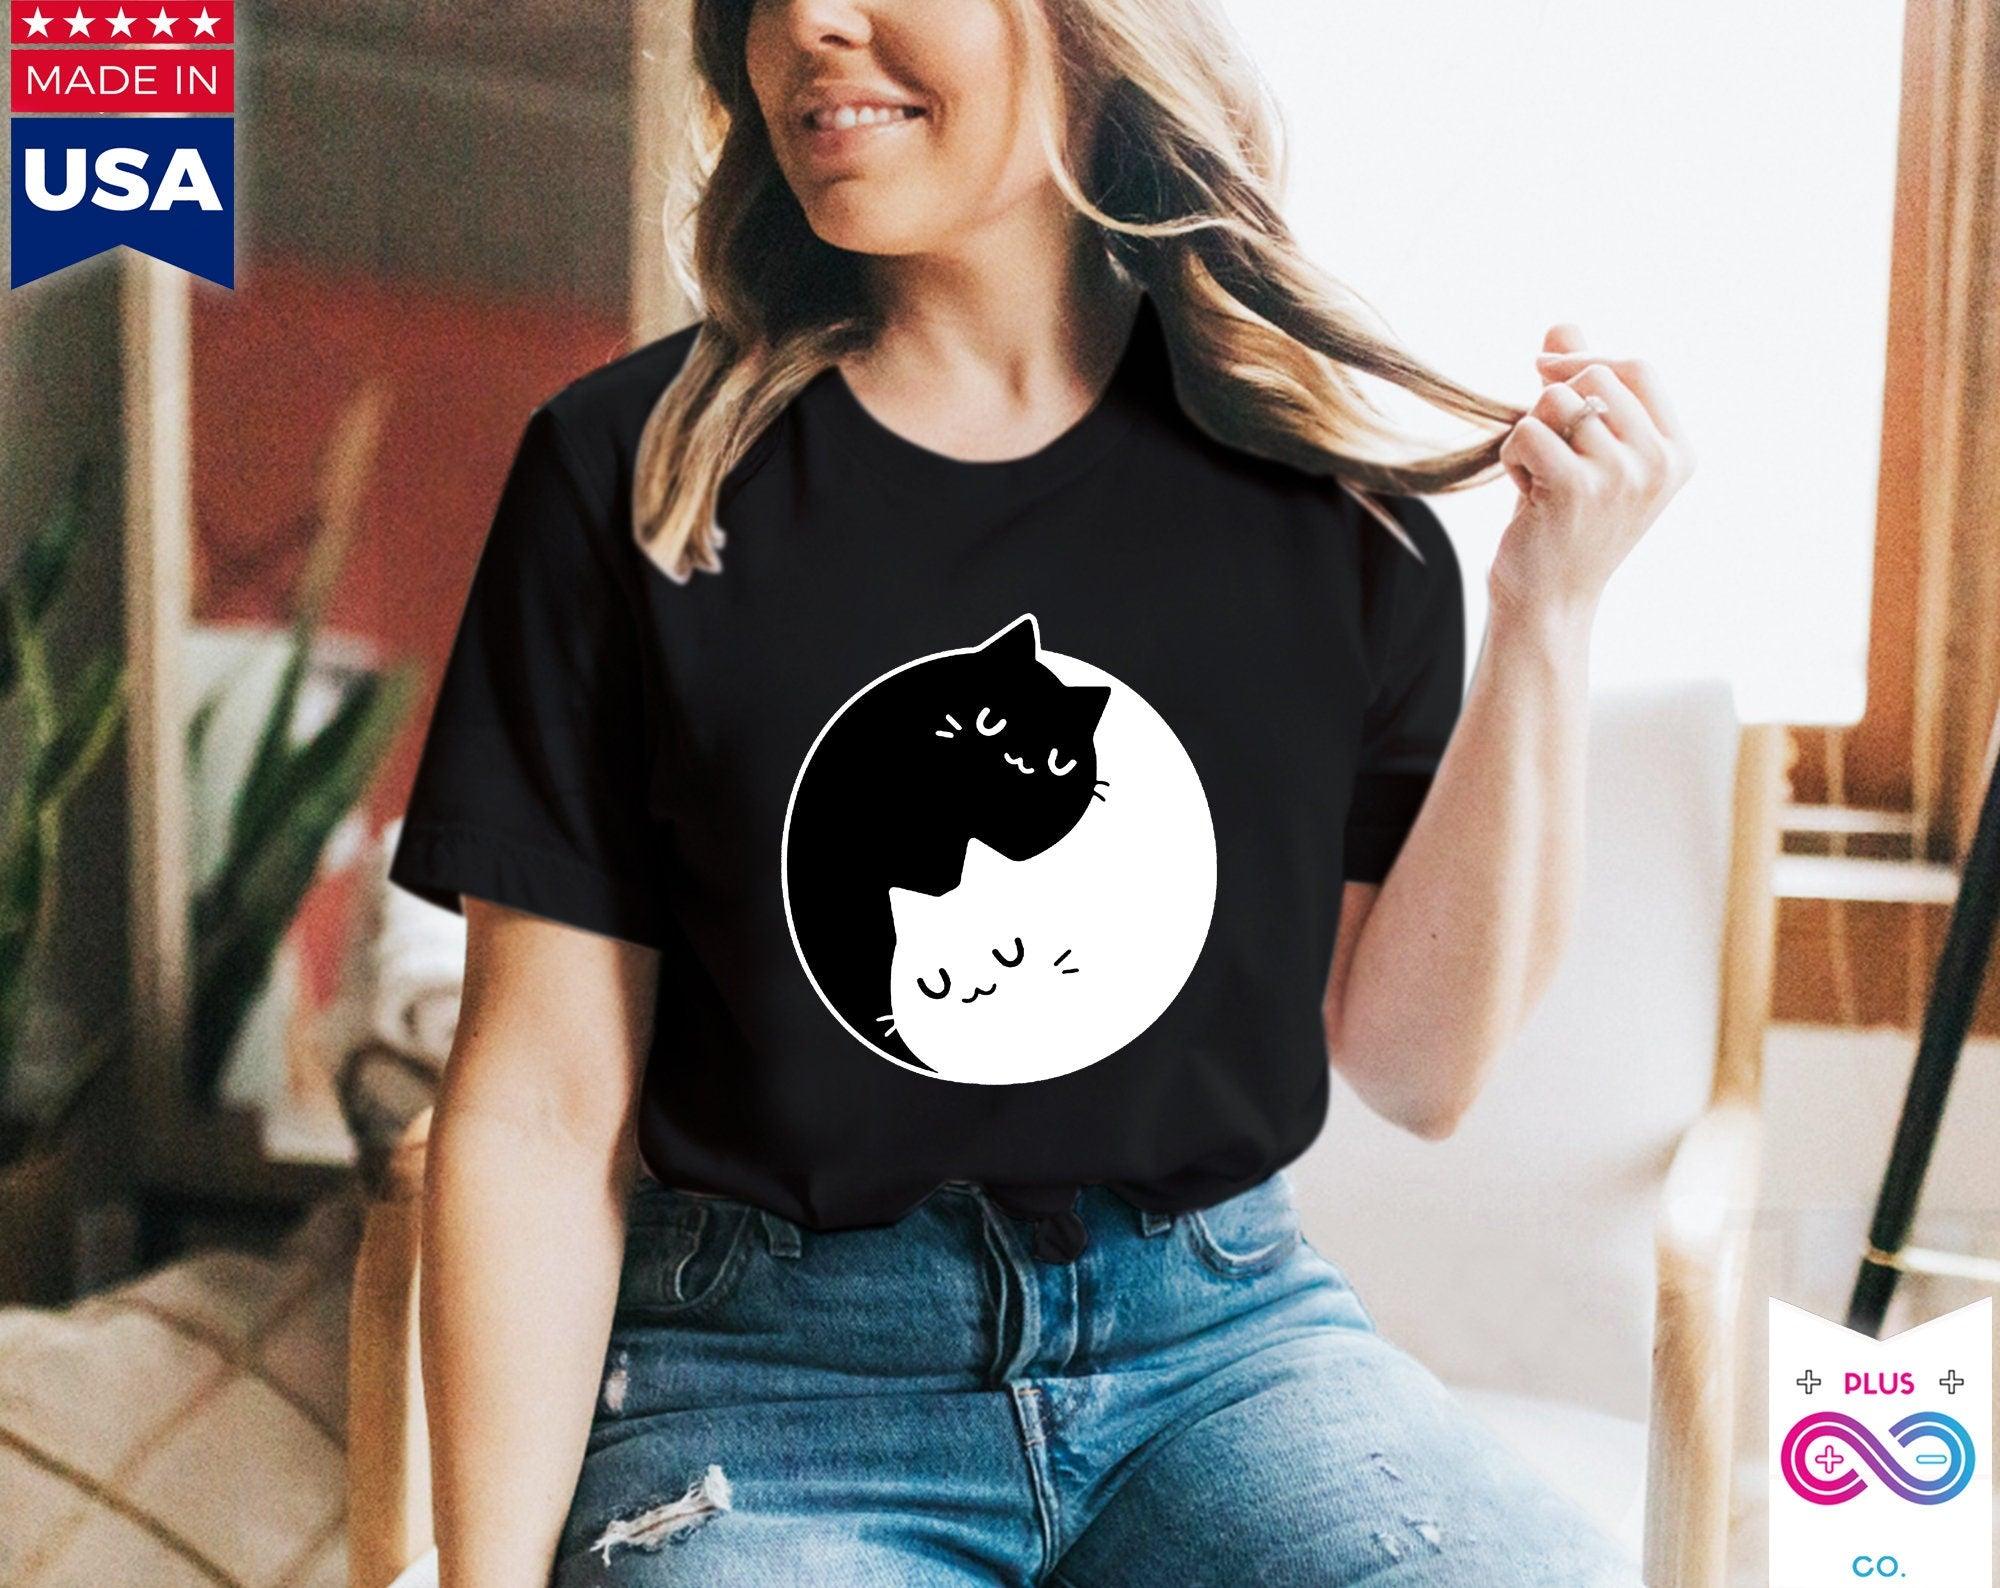 Yin Yang Cats T-Shirts , Yin Yang Duality || Yin Yang Cats || Perfect Gift - S M L Xl - Ladies, Men Unisex || Bff Couple Gift Ideas,Cat Mom - plusminusco.com